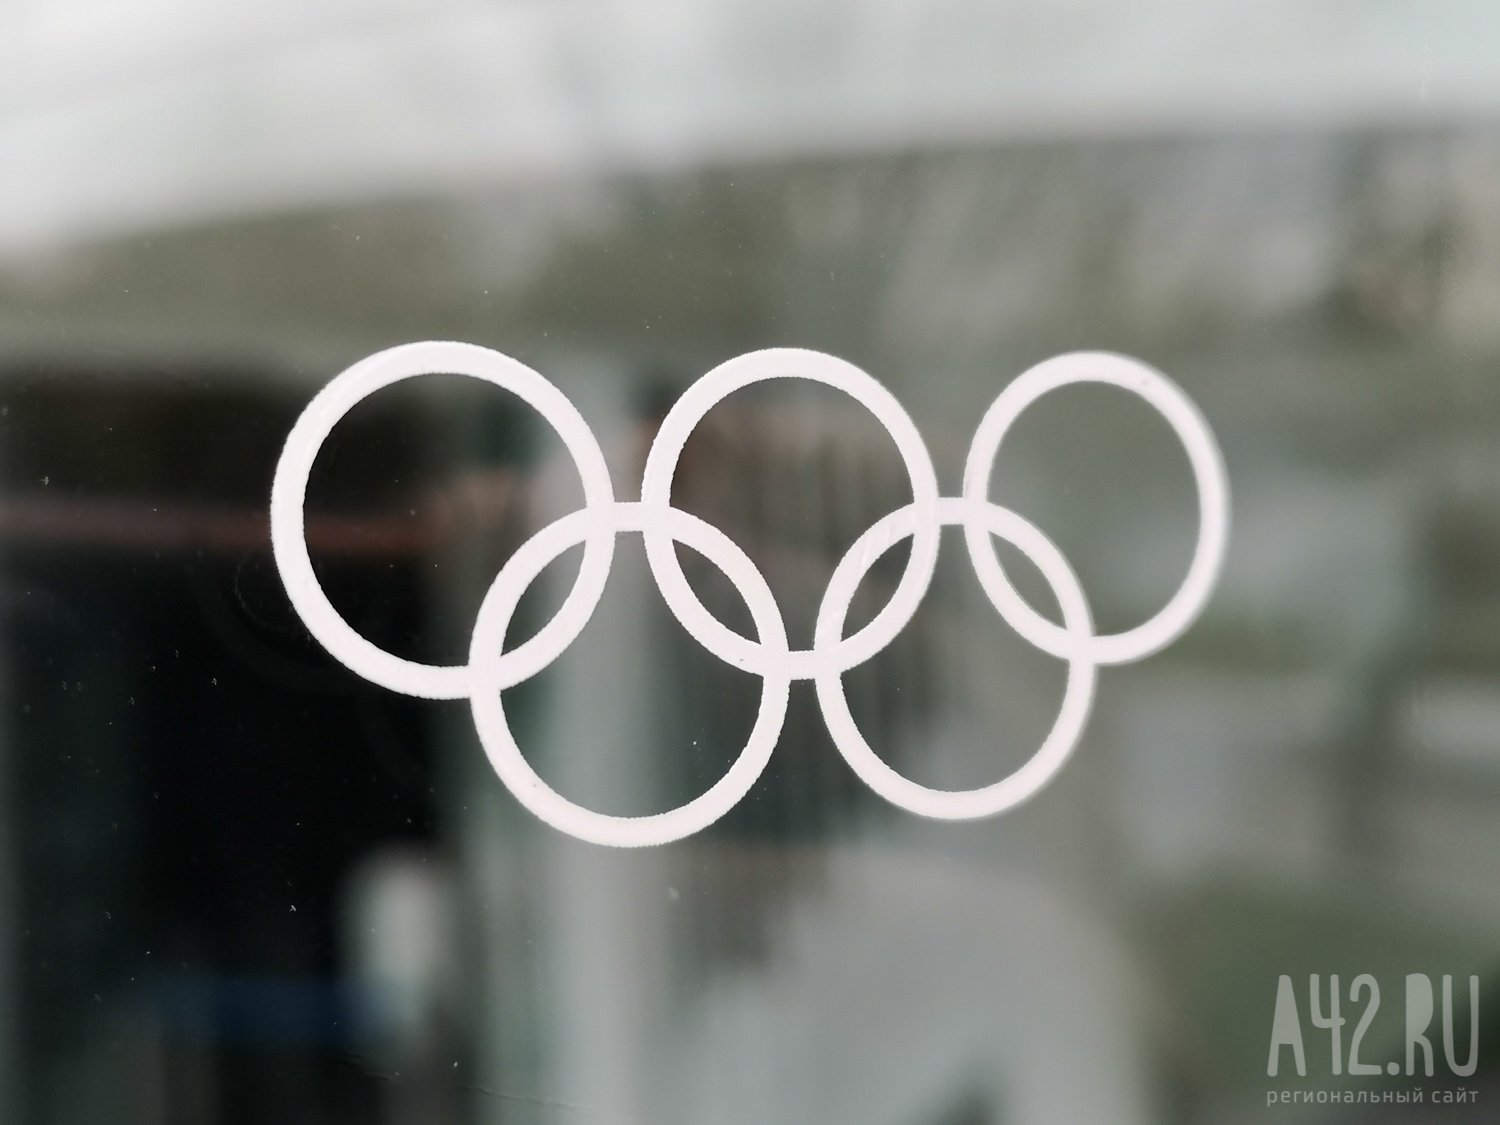 Рэпер Снуп Догг пронёс факел Олимпийских игр в Париже перед их открытием